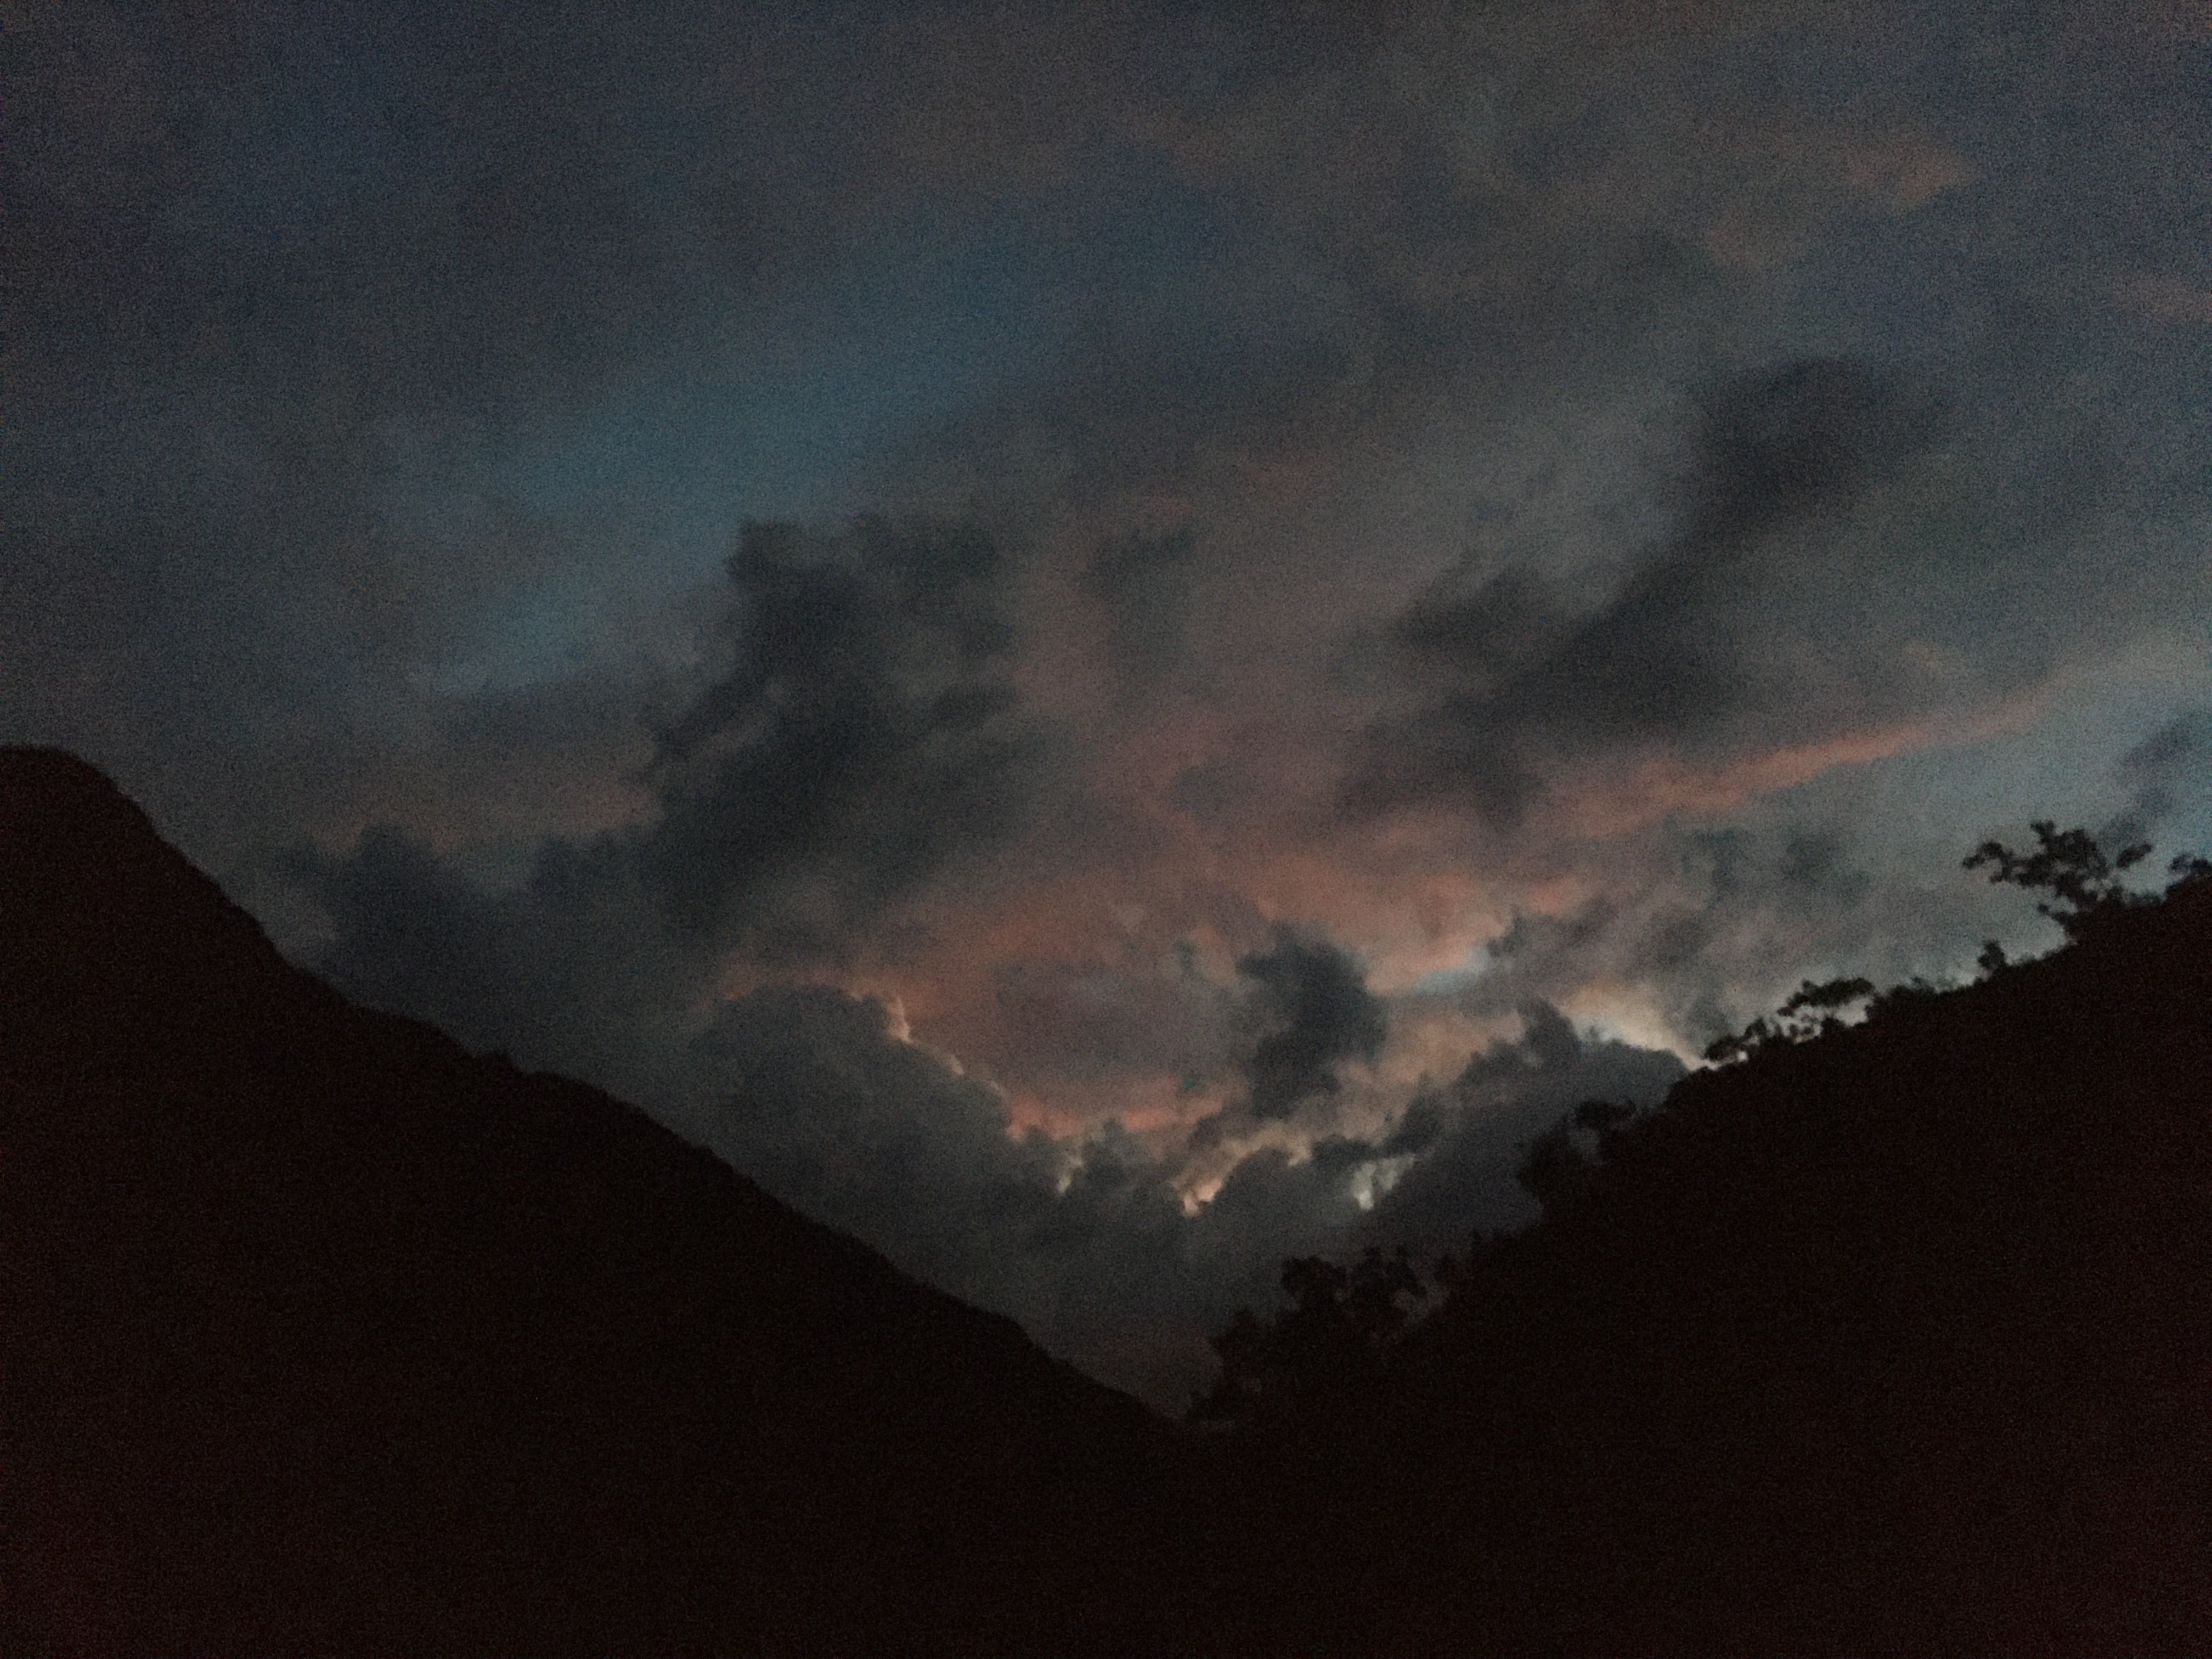 Foto muy oscura. Se intuyen los perfiles de las montañas de un valle y se ven en las nubes los colores rojizos del final del atardecer